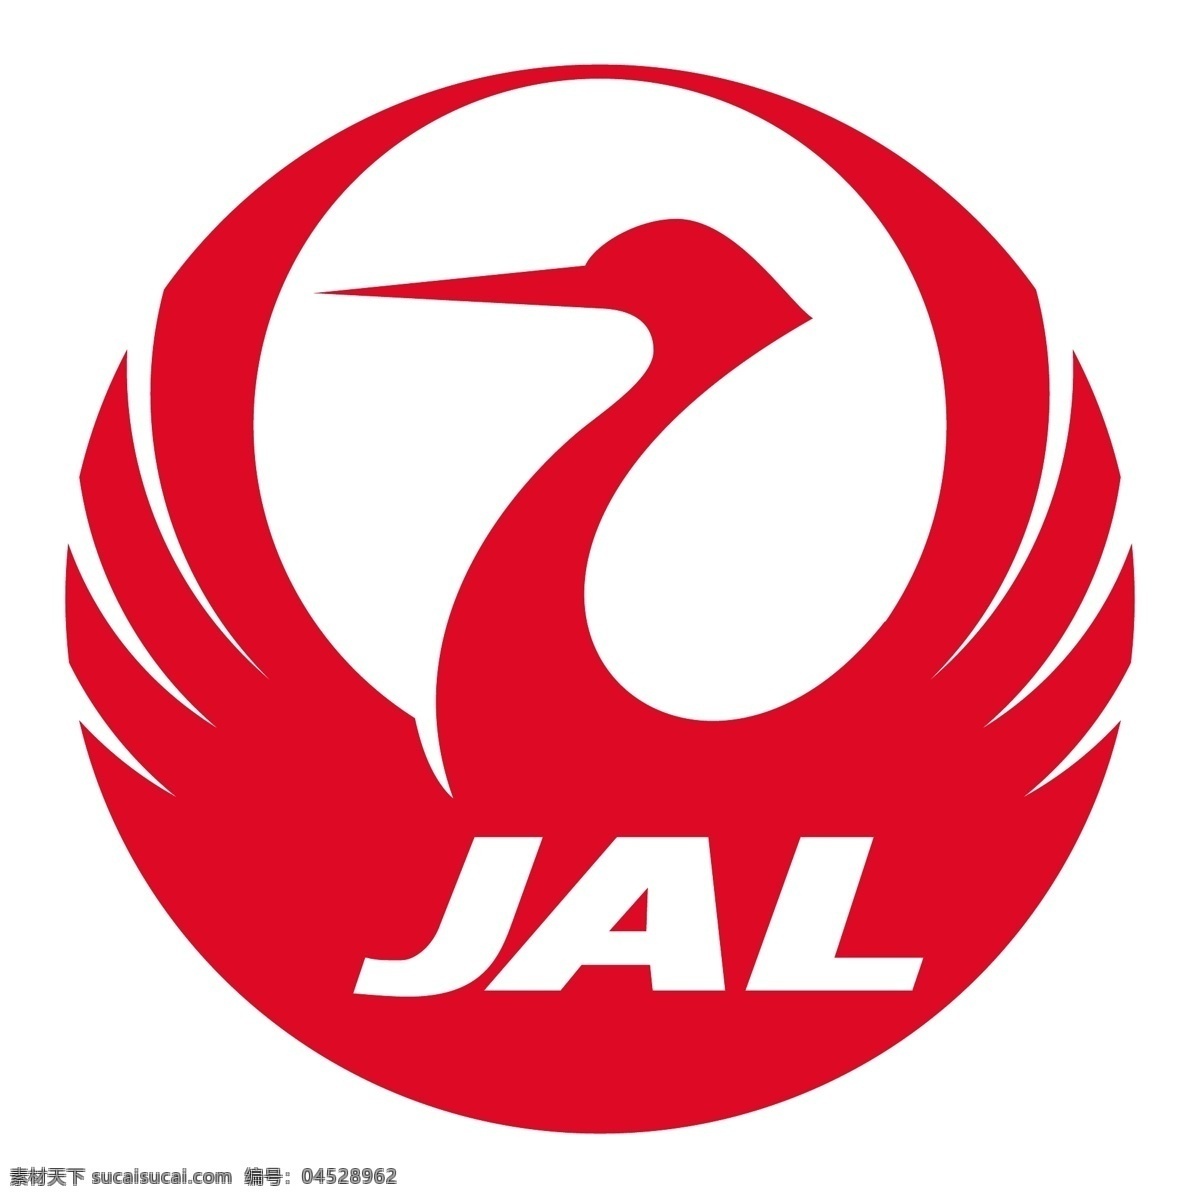 日本航空公司 标识 公司 免费 品牌 品牌标识 商标 矢量标志下载 免费矢量标识 矢量 psd源文件 logo设计